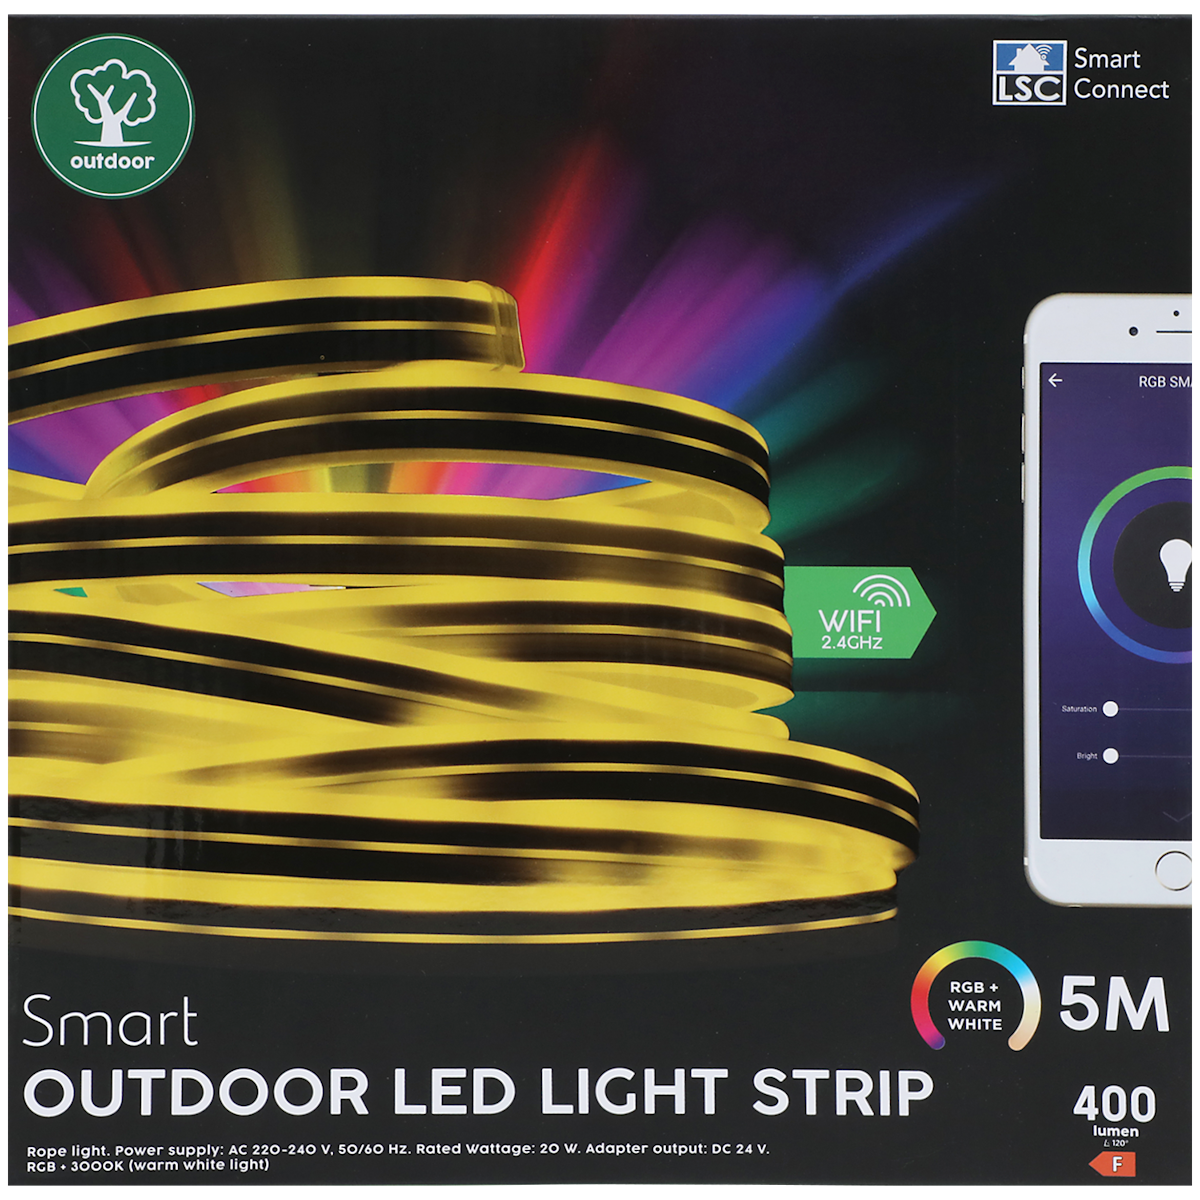 Ruban LED extérieur intelligent LSC Smart Connect